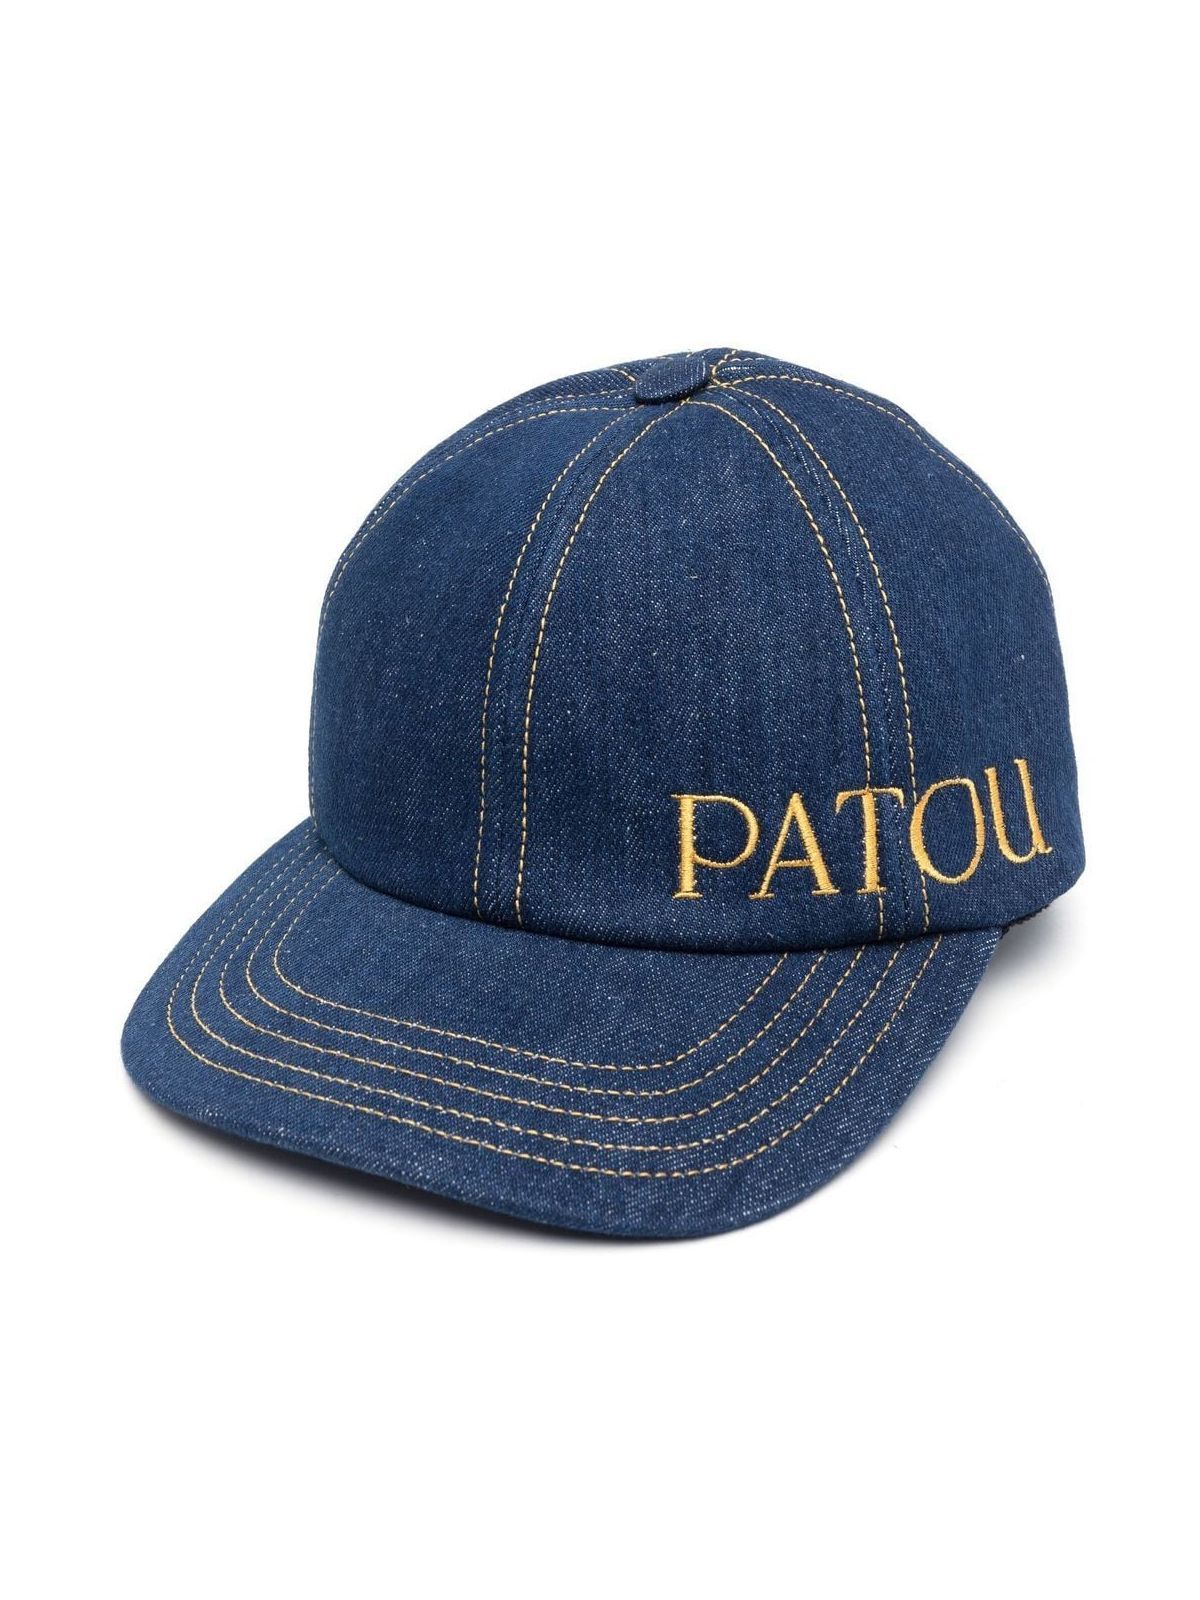 Shop Patou Women Hats: Unisex  Cap